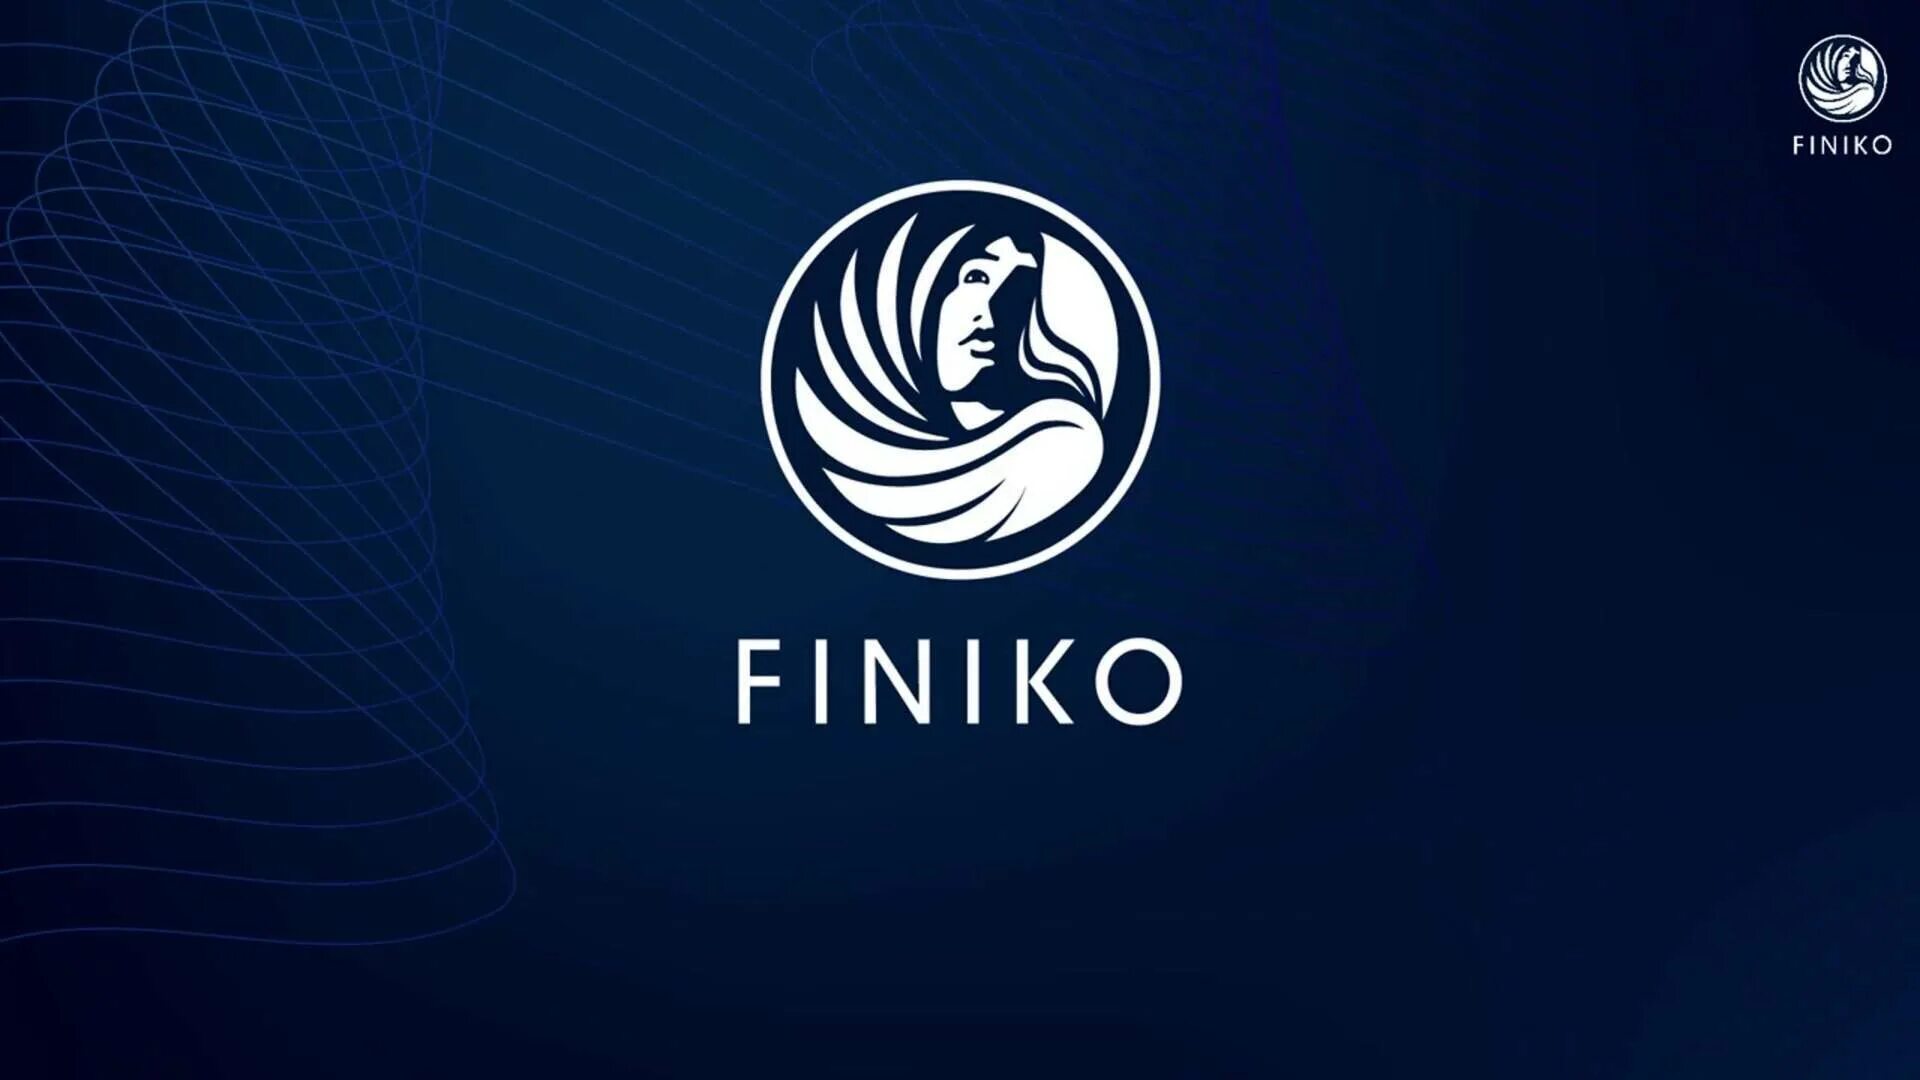 Финико. Компания Finiko. Финансовая пирамида Финико. Эмблема Финико. Финансовые пирамиды финика